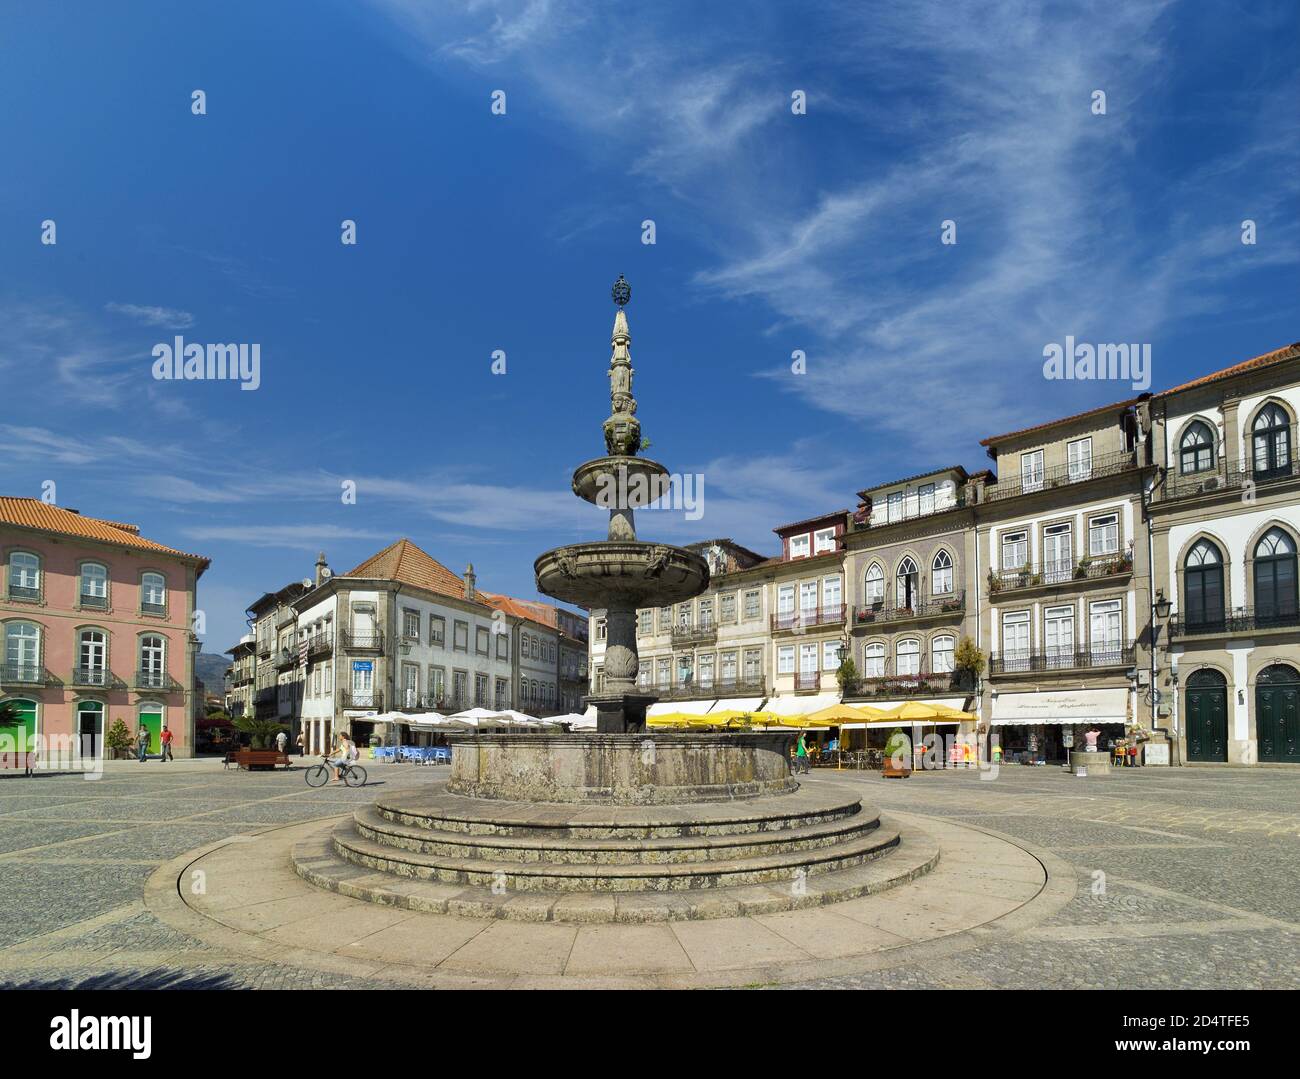 Portugal, Costa Verde, quartier Minho, Ponte de Lima, fontaine sur la place principale Banque D'Images